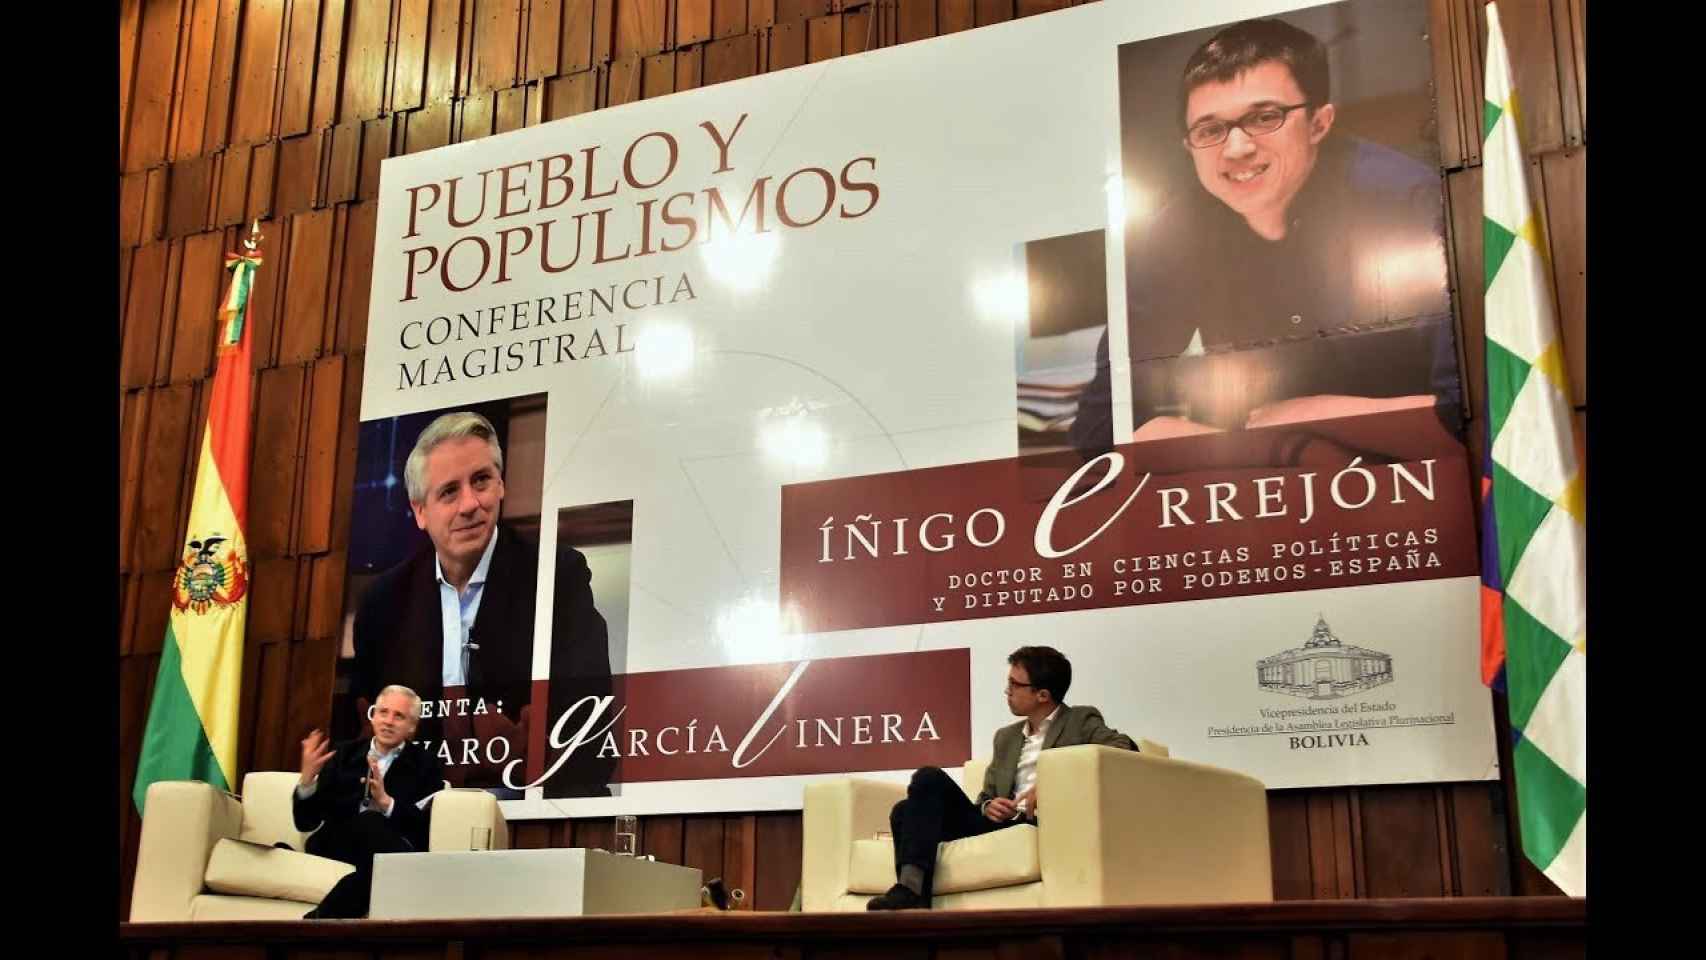 Álvaro García Linera e Íñigo Errejón, en una conferencia magistral en La Paz (Bolivia).